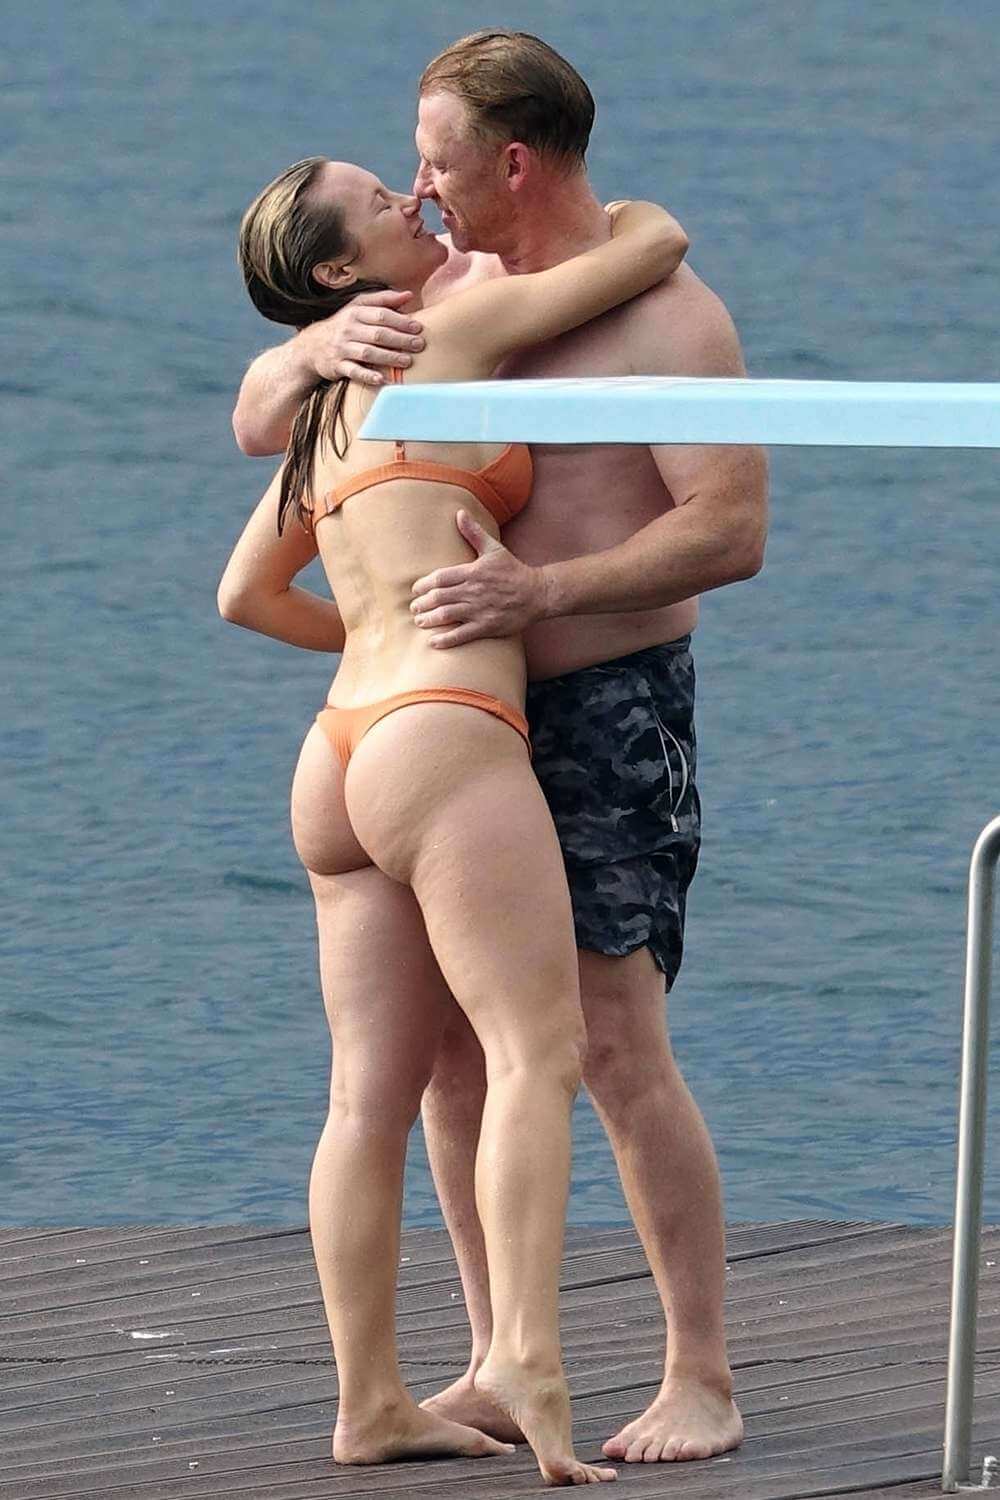 Звездата от "Анатомията на Грей" Кевин Маккид и актрисата от "Станция 19" Даниел Савр бяха забелязани да се целуват в Италия